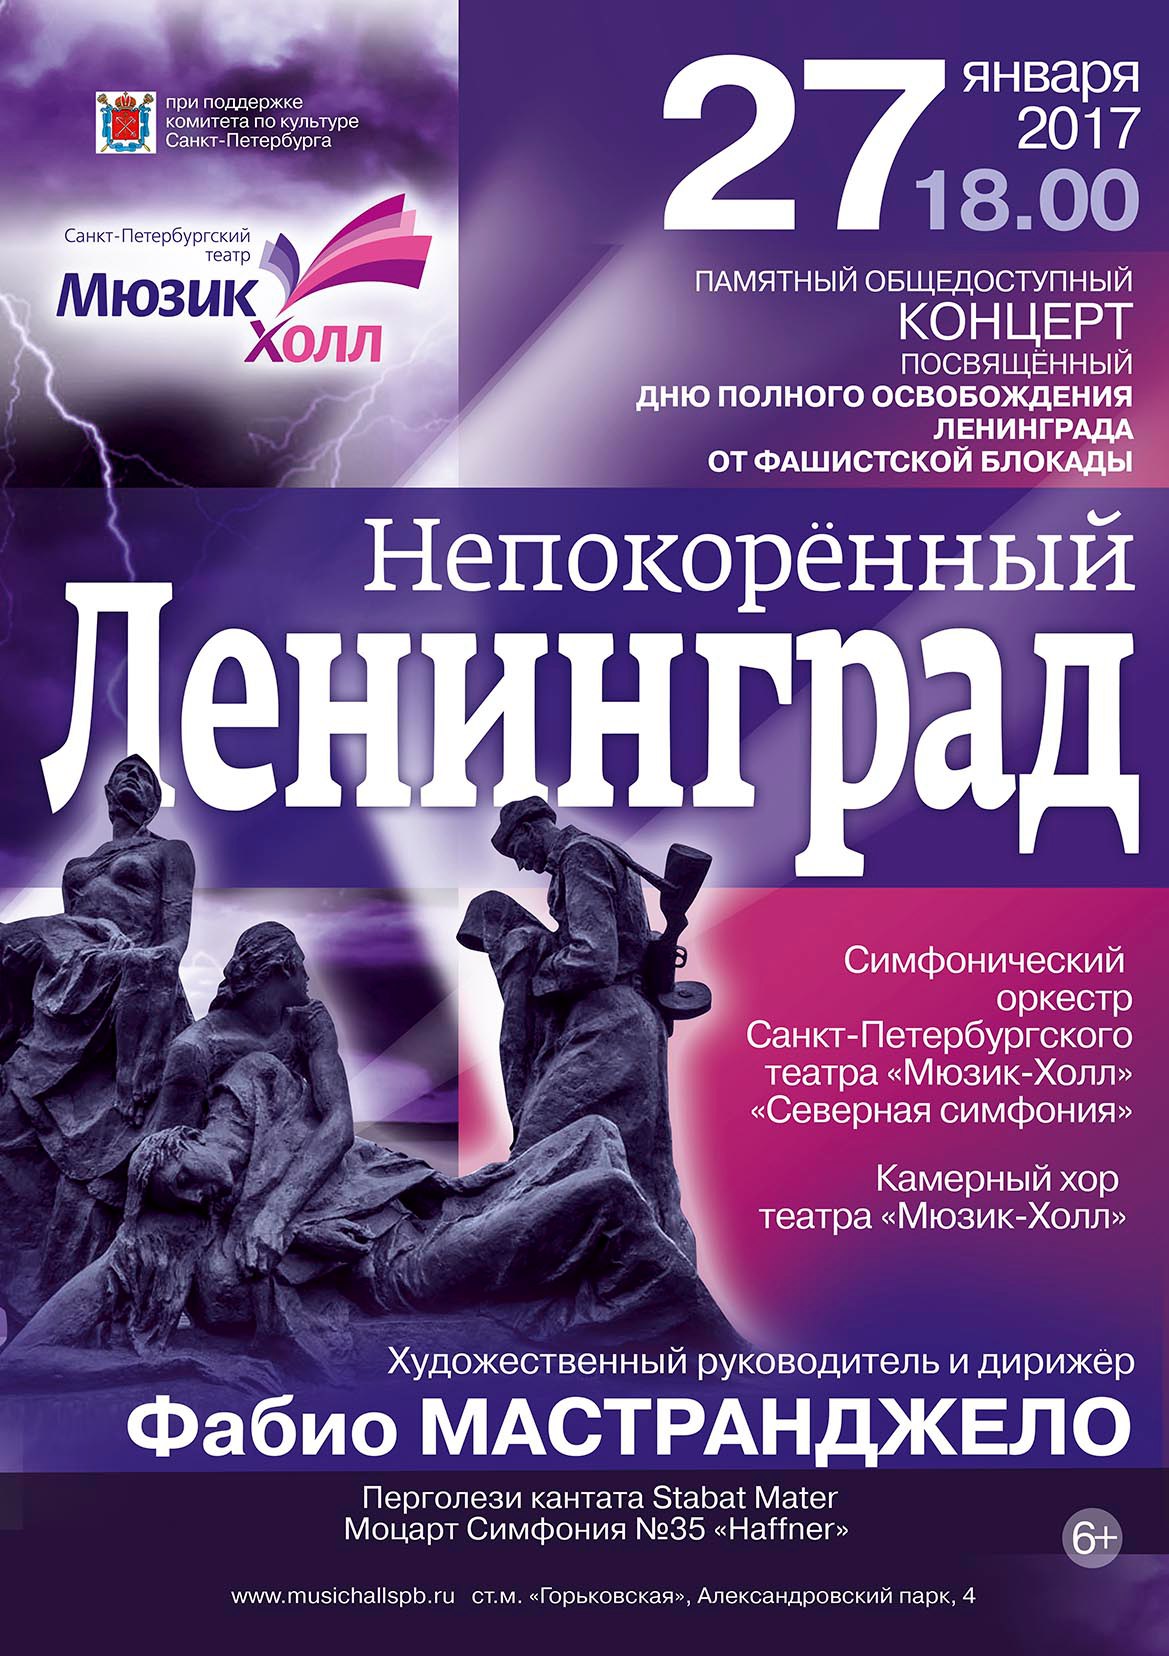 Общедоступный концерт «Непокоренный Ленинград»